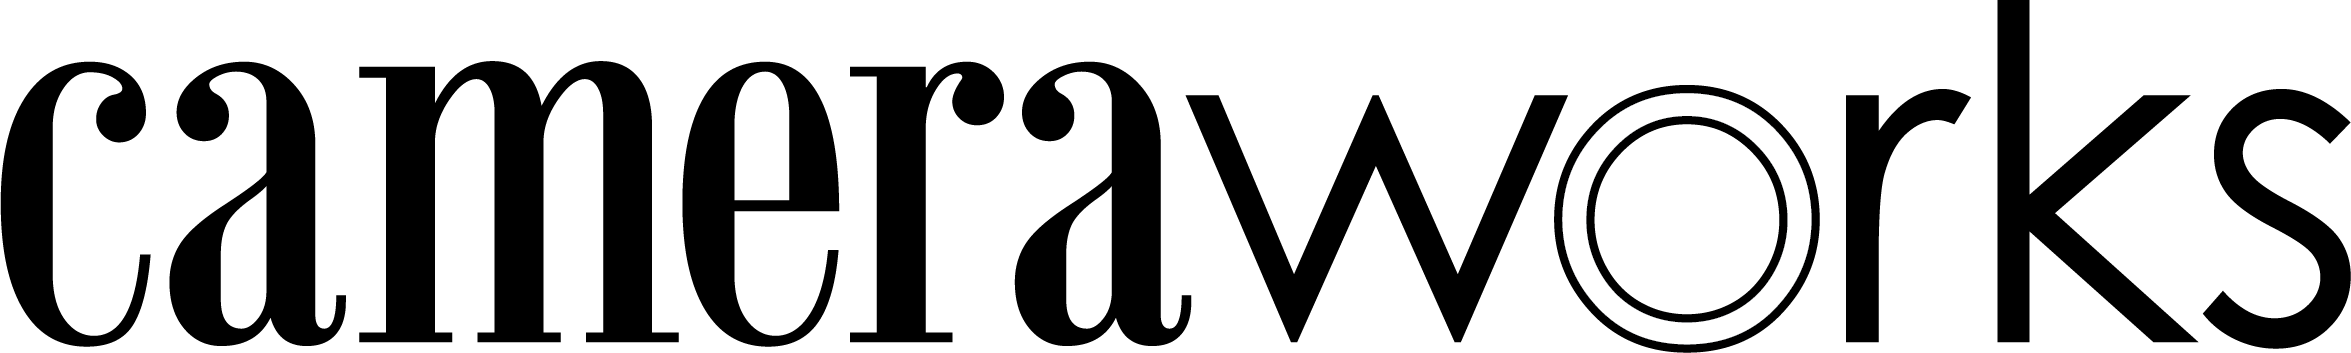 Camerworks logo